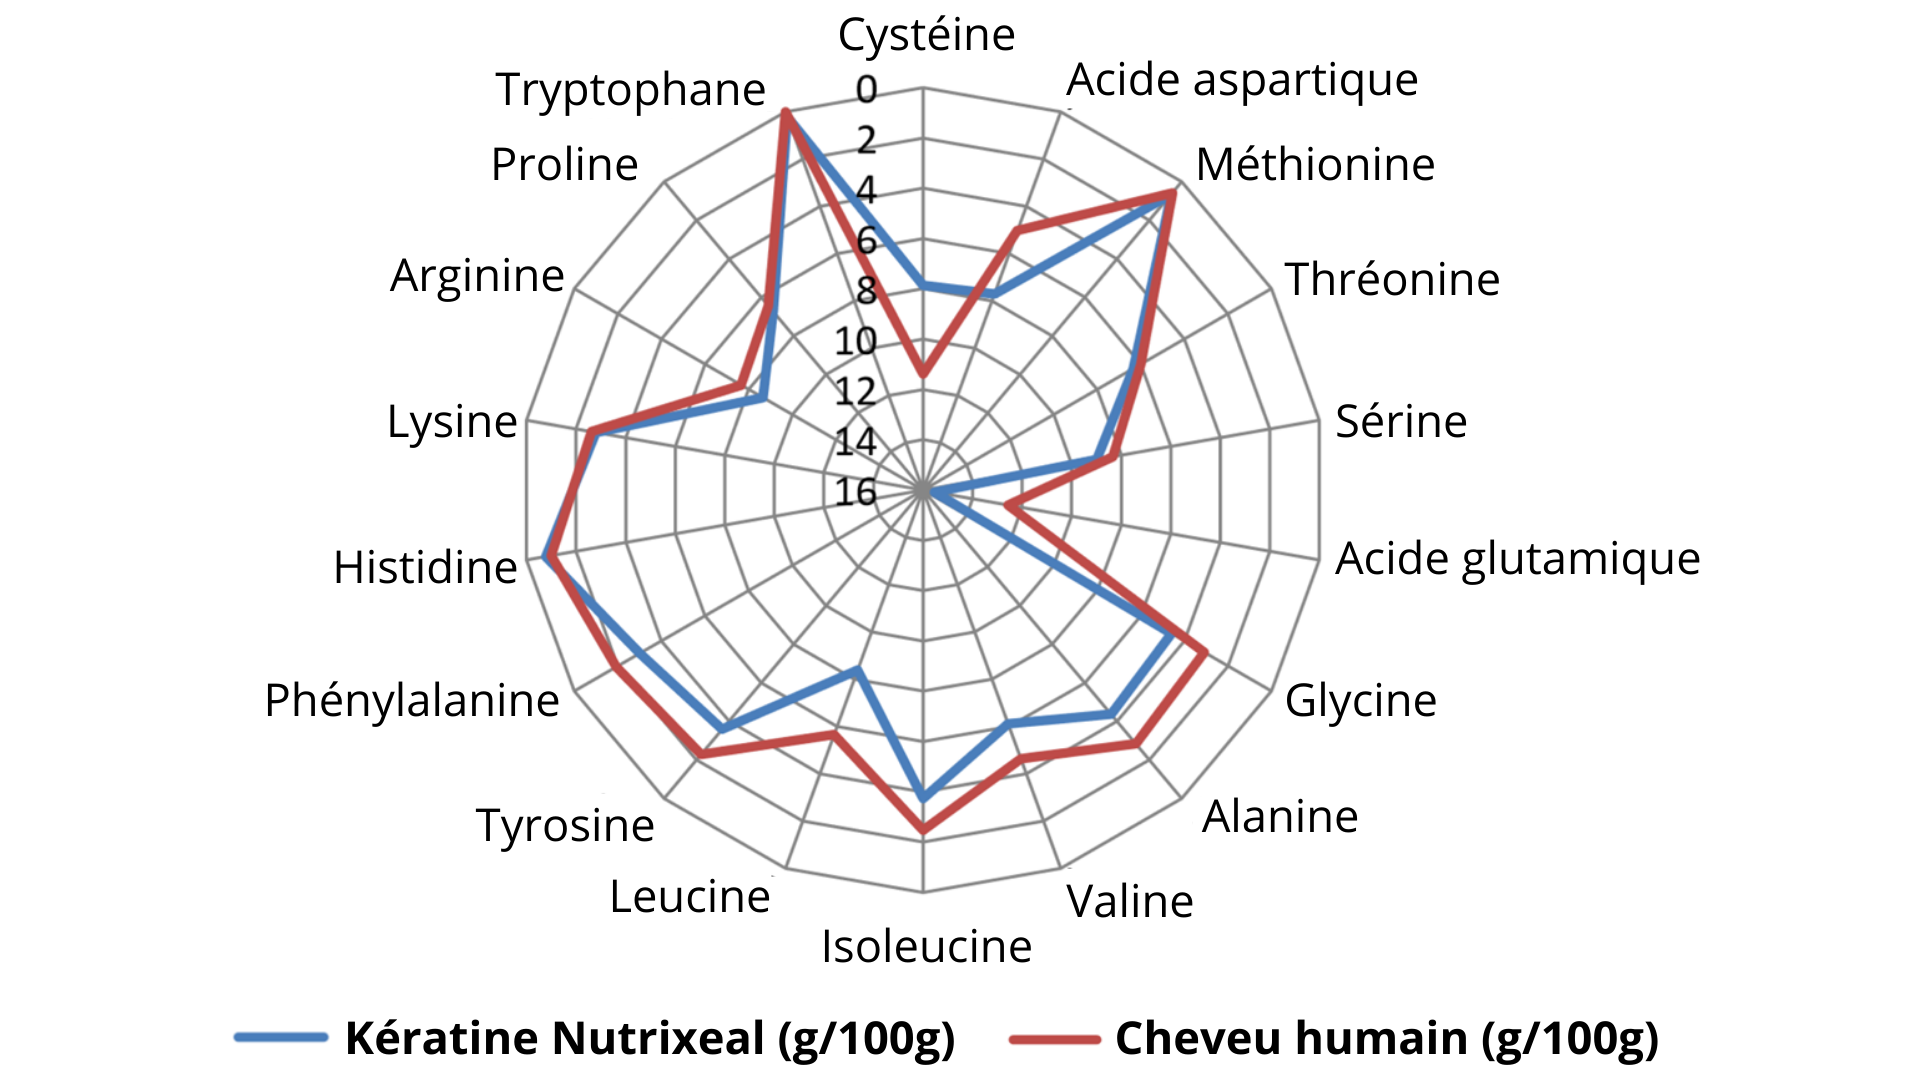 Diagramme de Kiviat et forte similitude entre la kératine cynatine hns Nutrixeal et celle du cheveu humain